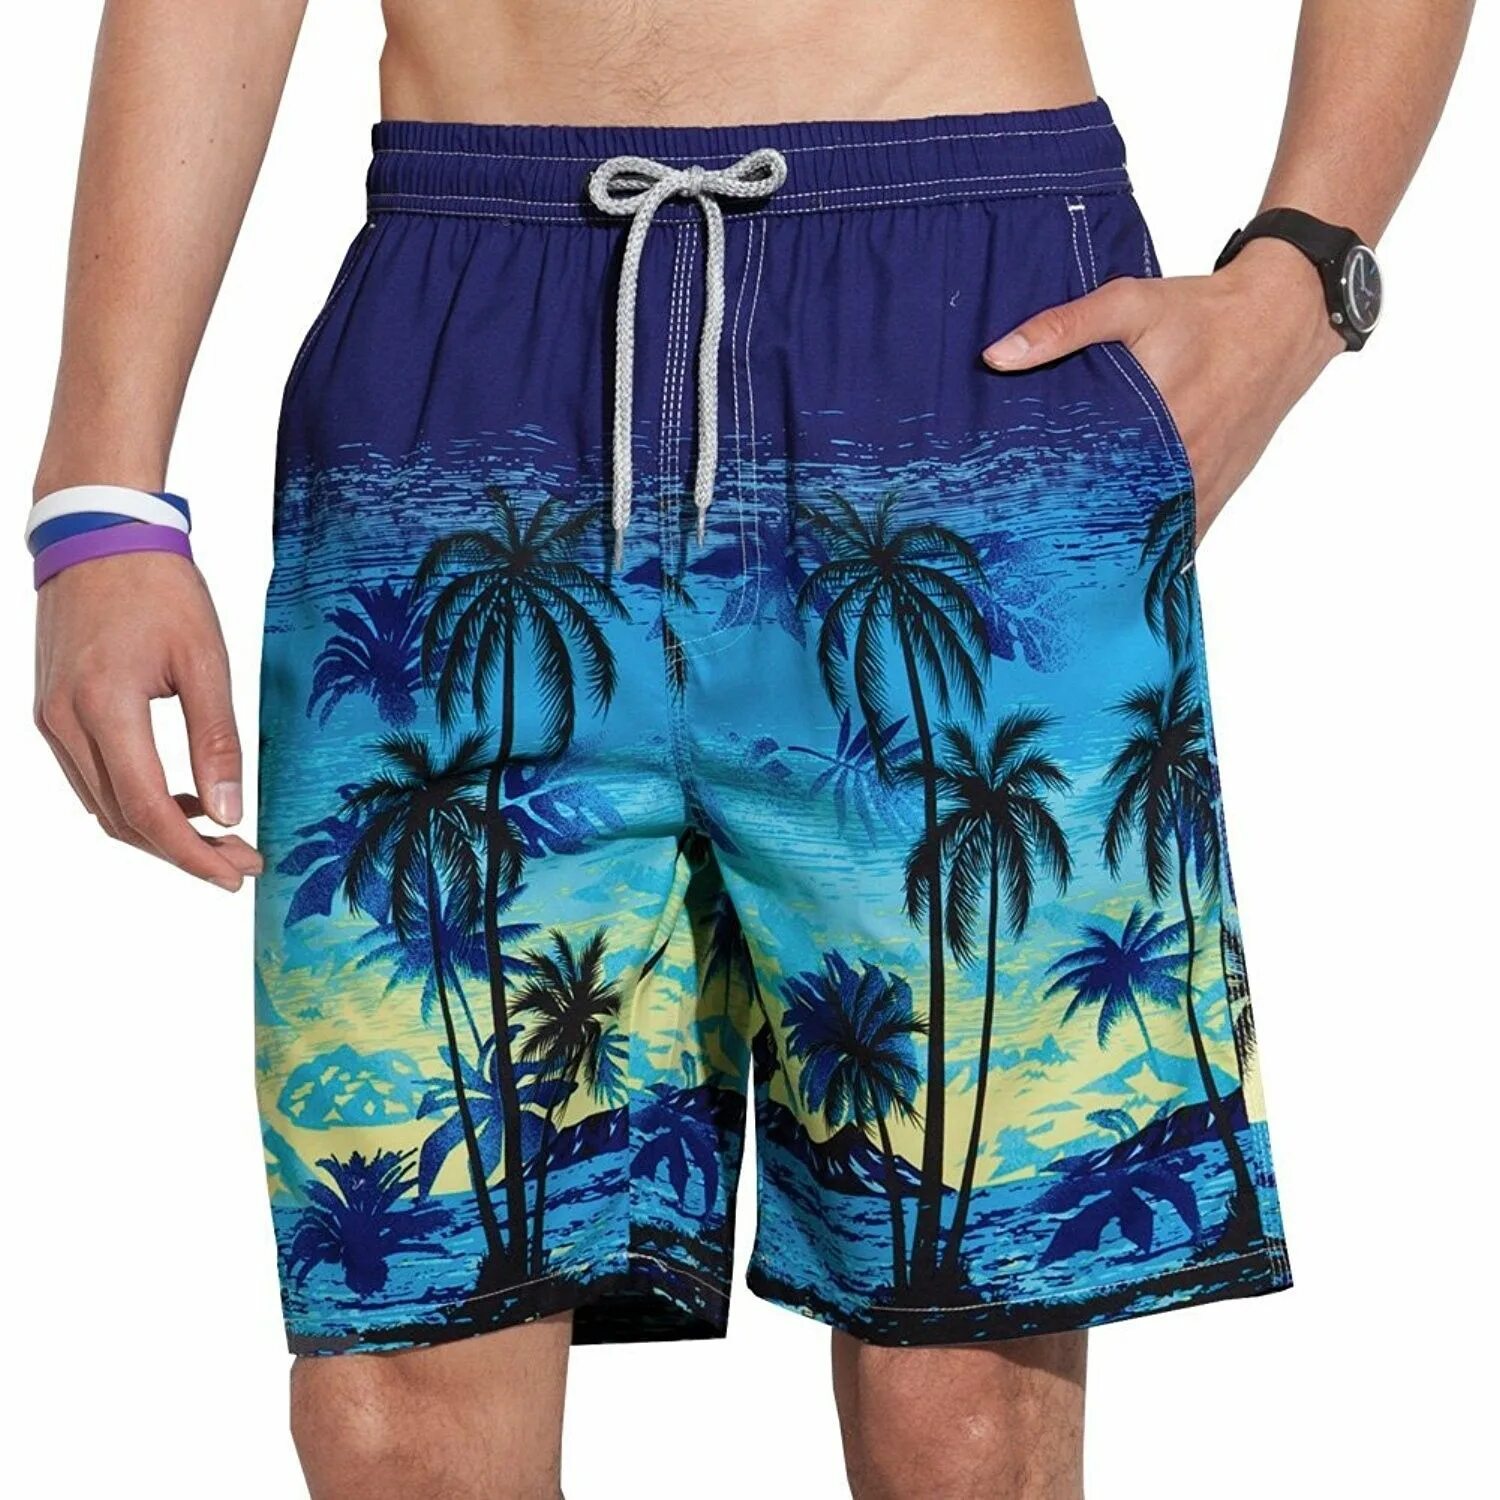 Шорты palm. Reyn Spooner шорты мужские. Мужские плавательные шорты Venice Beach Eco. Плавательные шорты гуччи. Шорты с пальмами мужские.